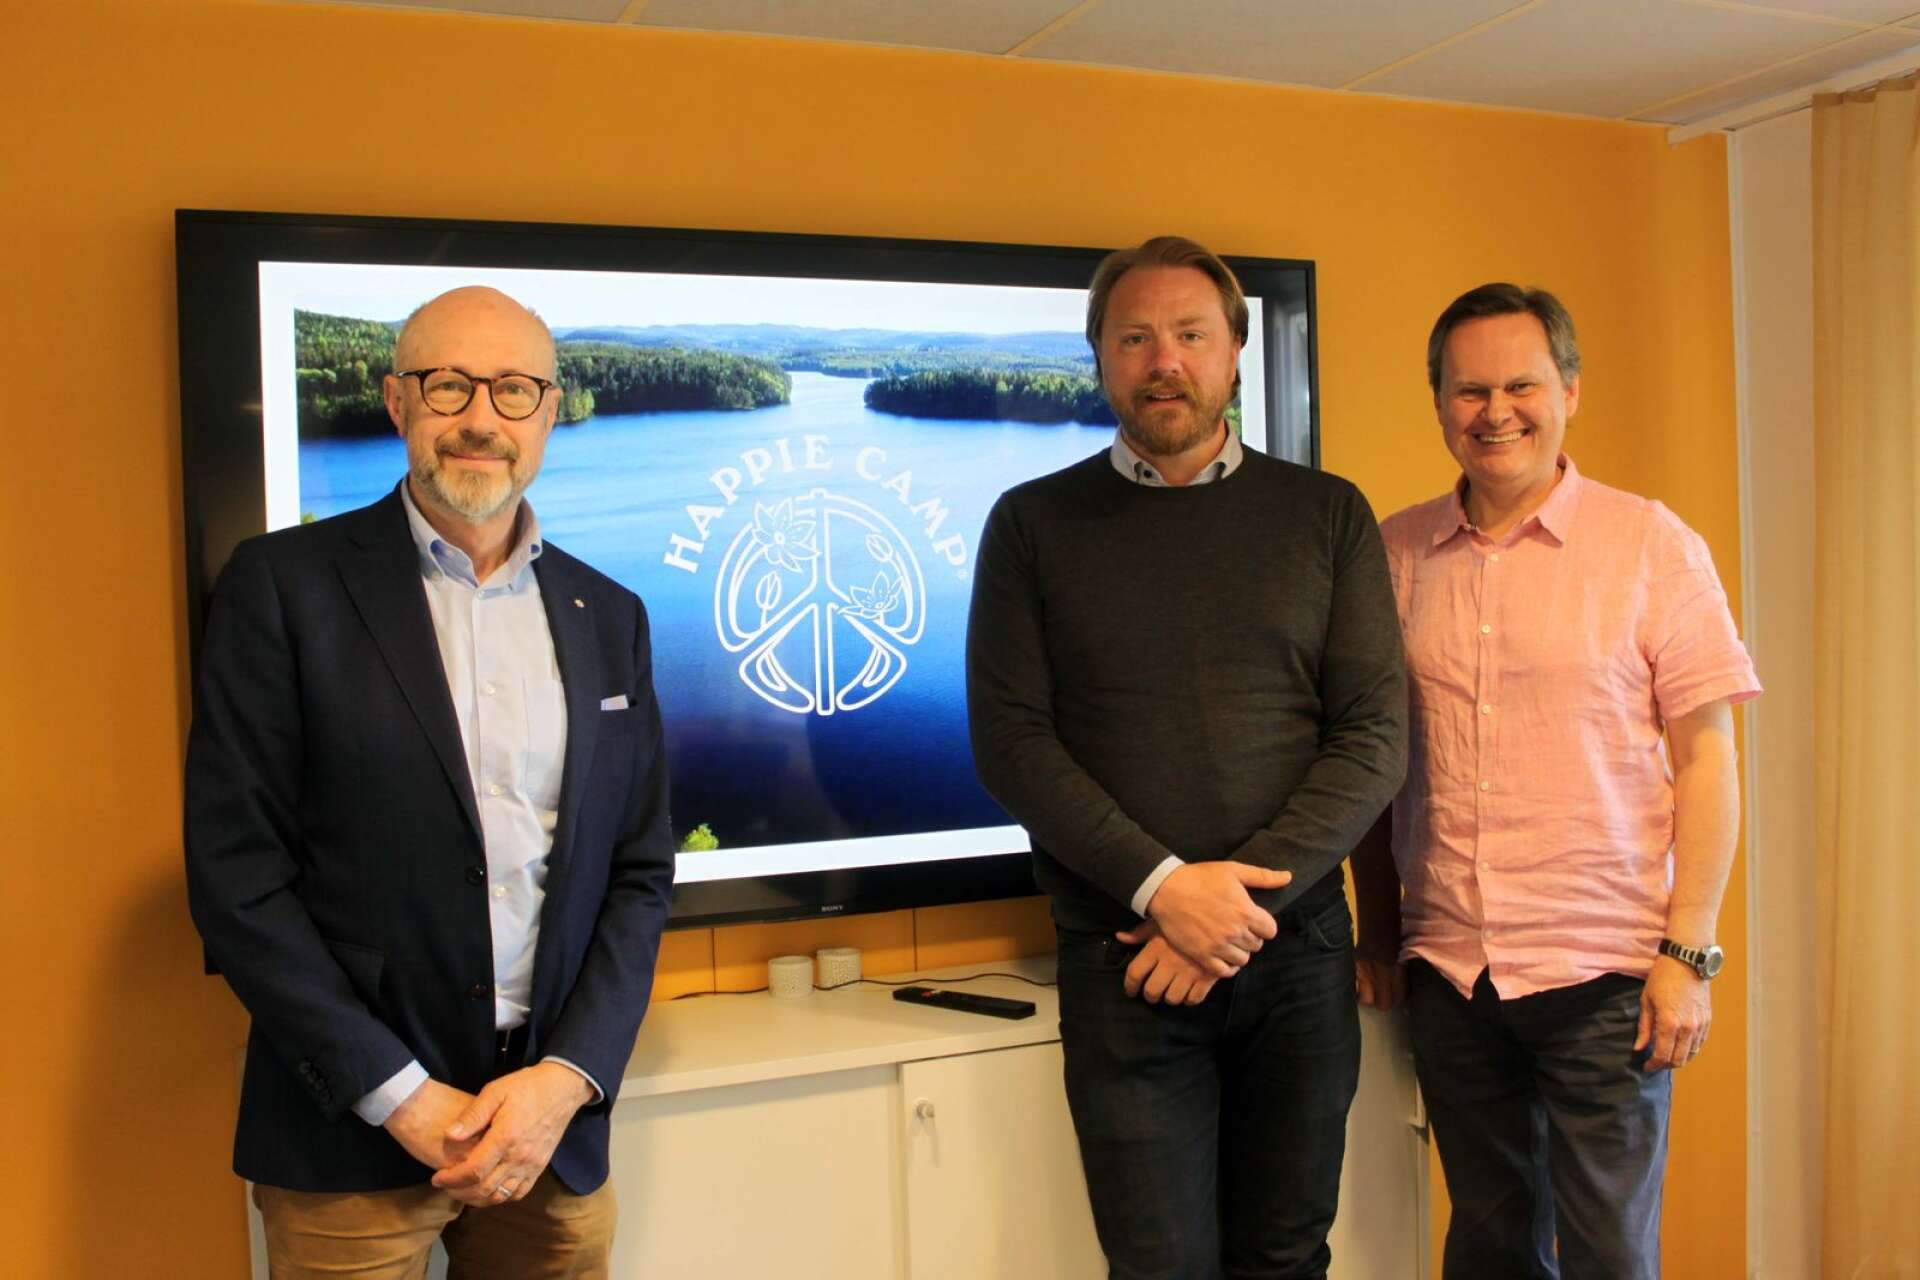 Anders Olsson, Region Värmland, t.v. som utsetts till hedersdoktor tillsammans med Staffan Svantesson, Happie Camp och Victor Isaksen, Sting Bioeconomy. Anders Olsson har deltagit i arbetet med att etablera bägge företagen.